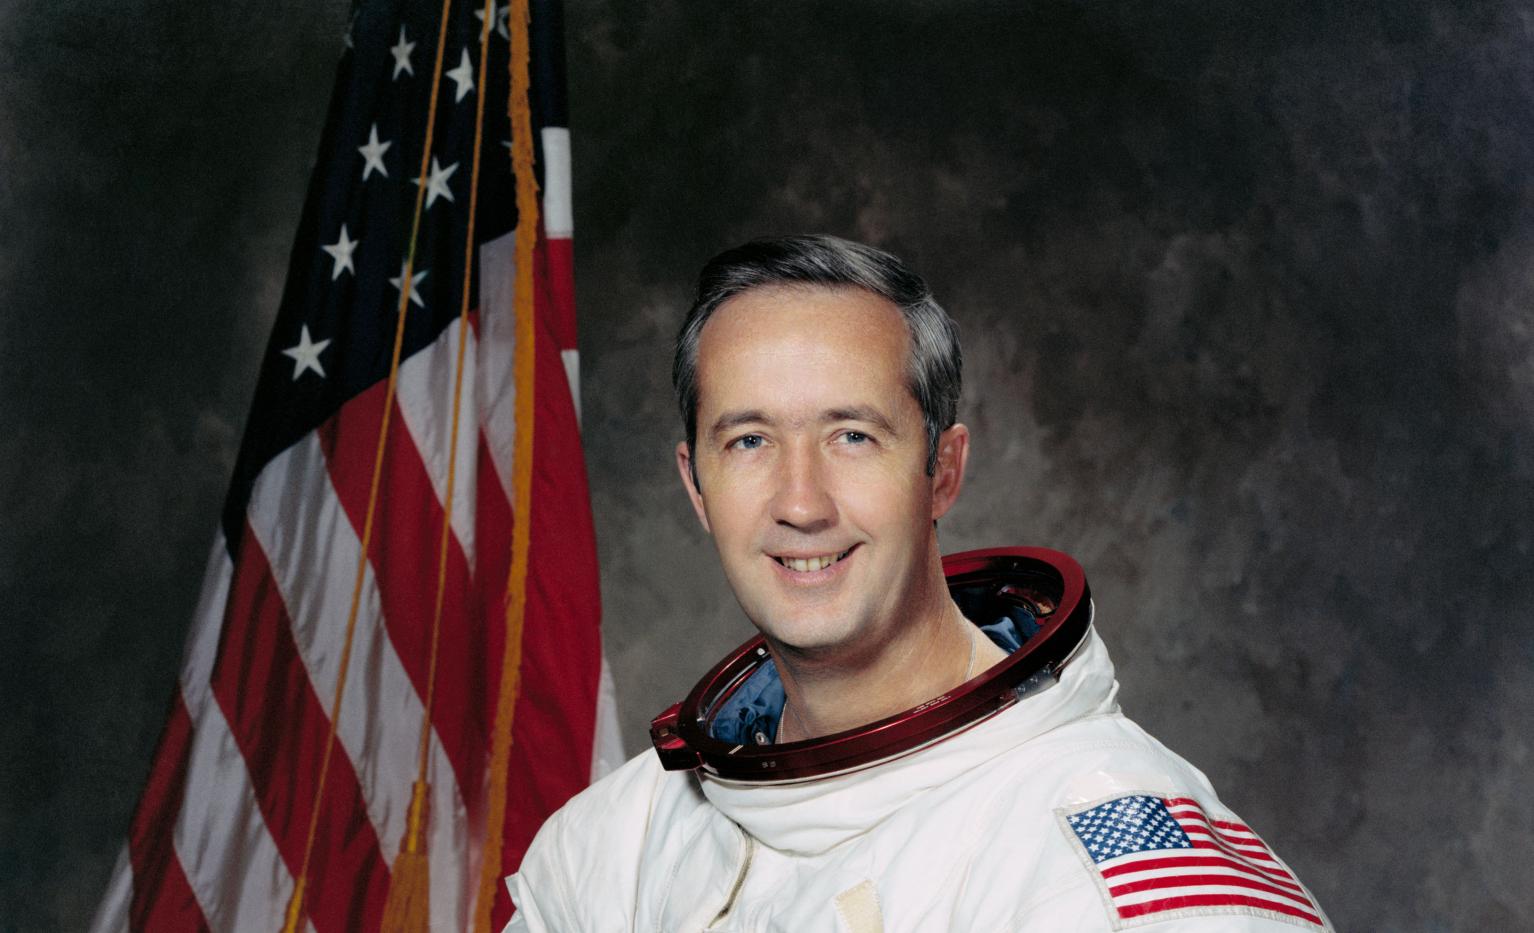 Astronaut James A. McDivitt